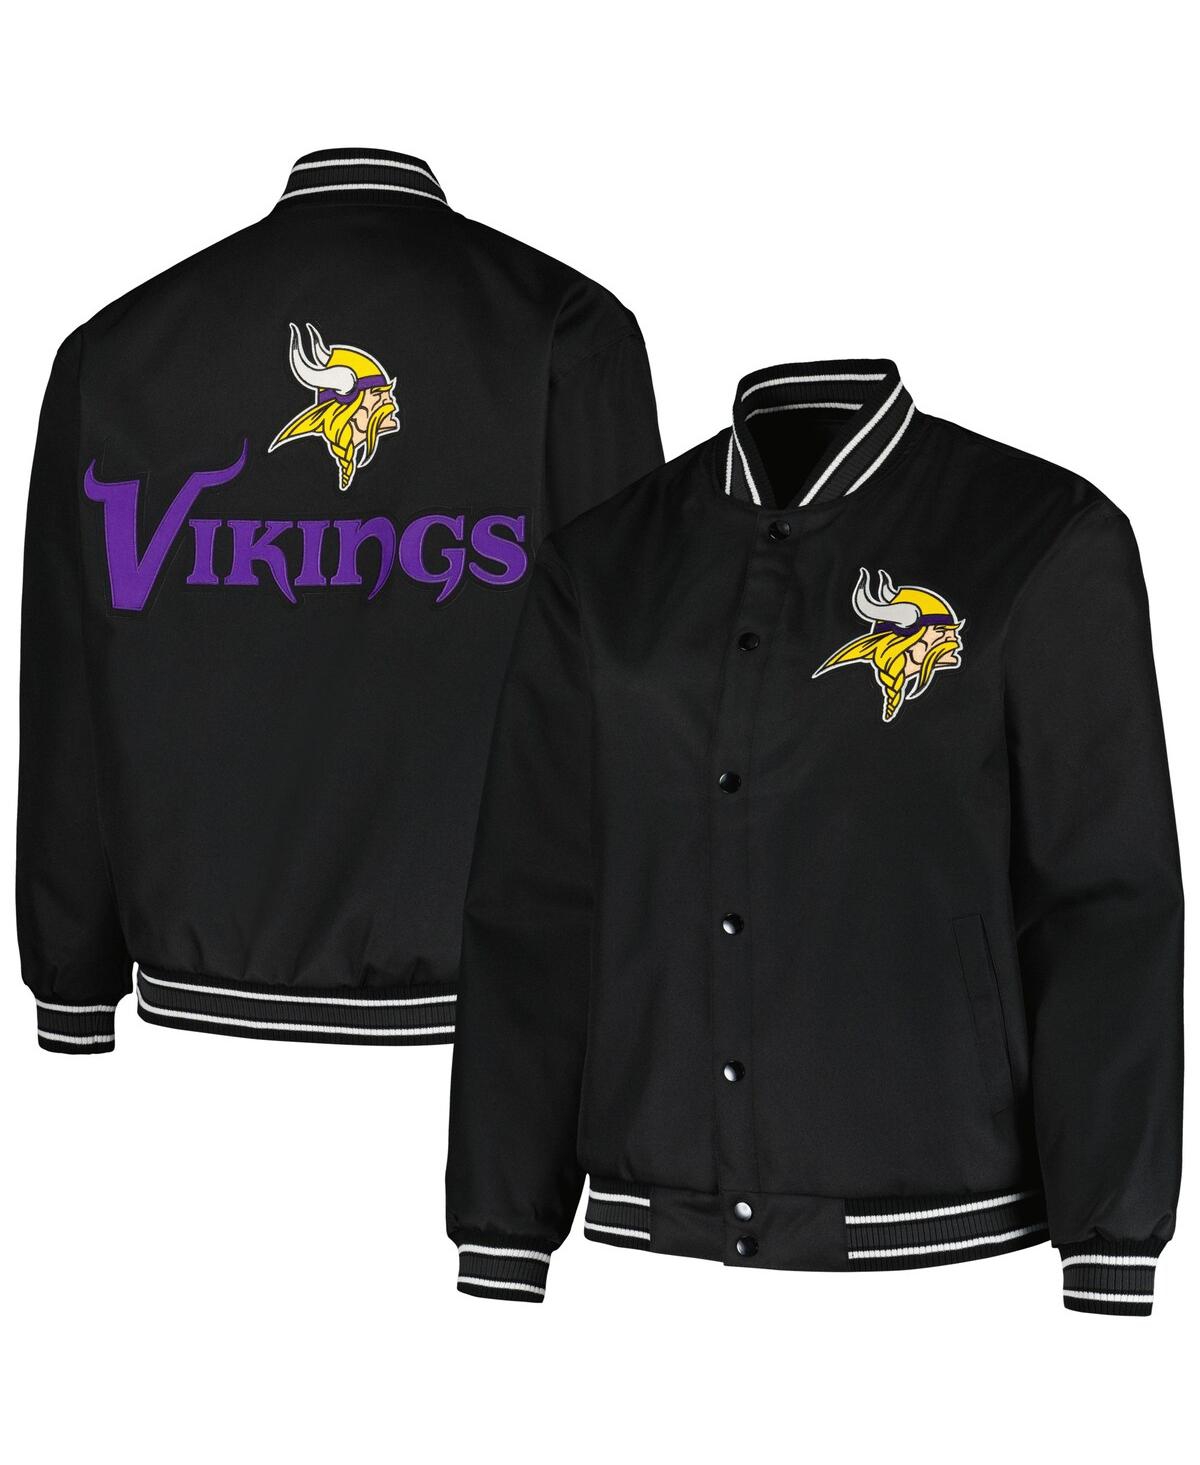 Women's Jh Design Black Minnesota Vikings Plus Size Full-Snap Jacket - Black